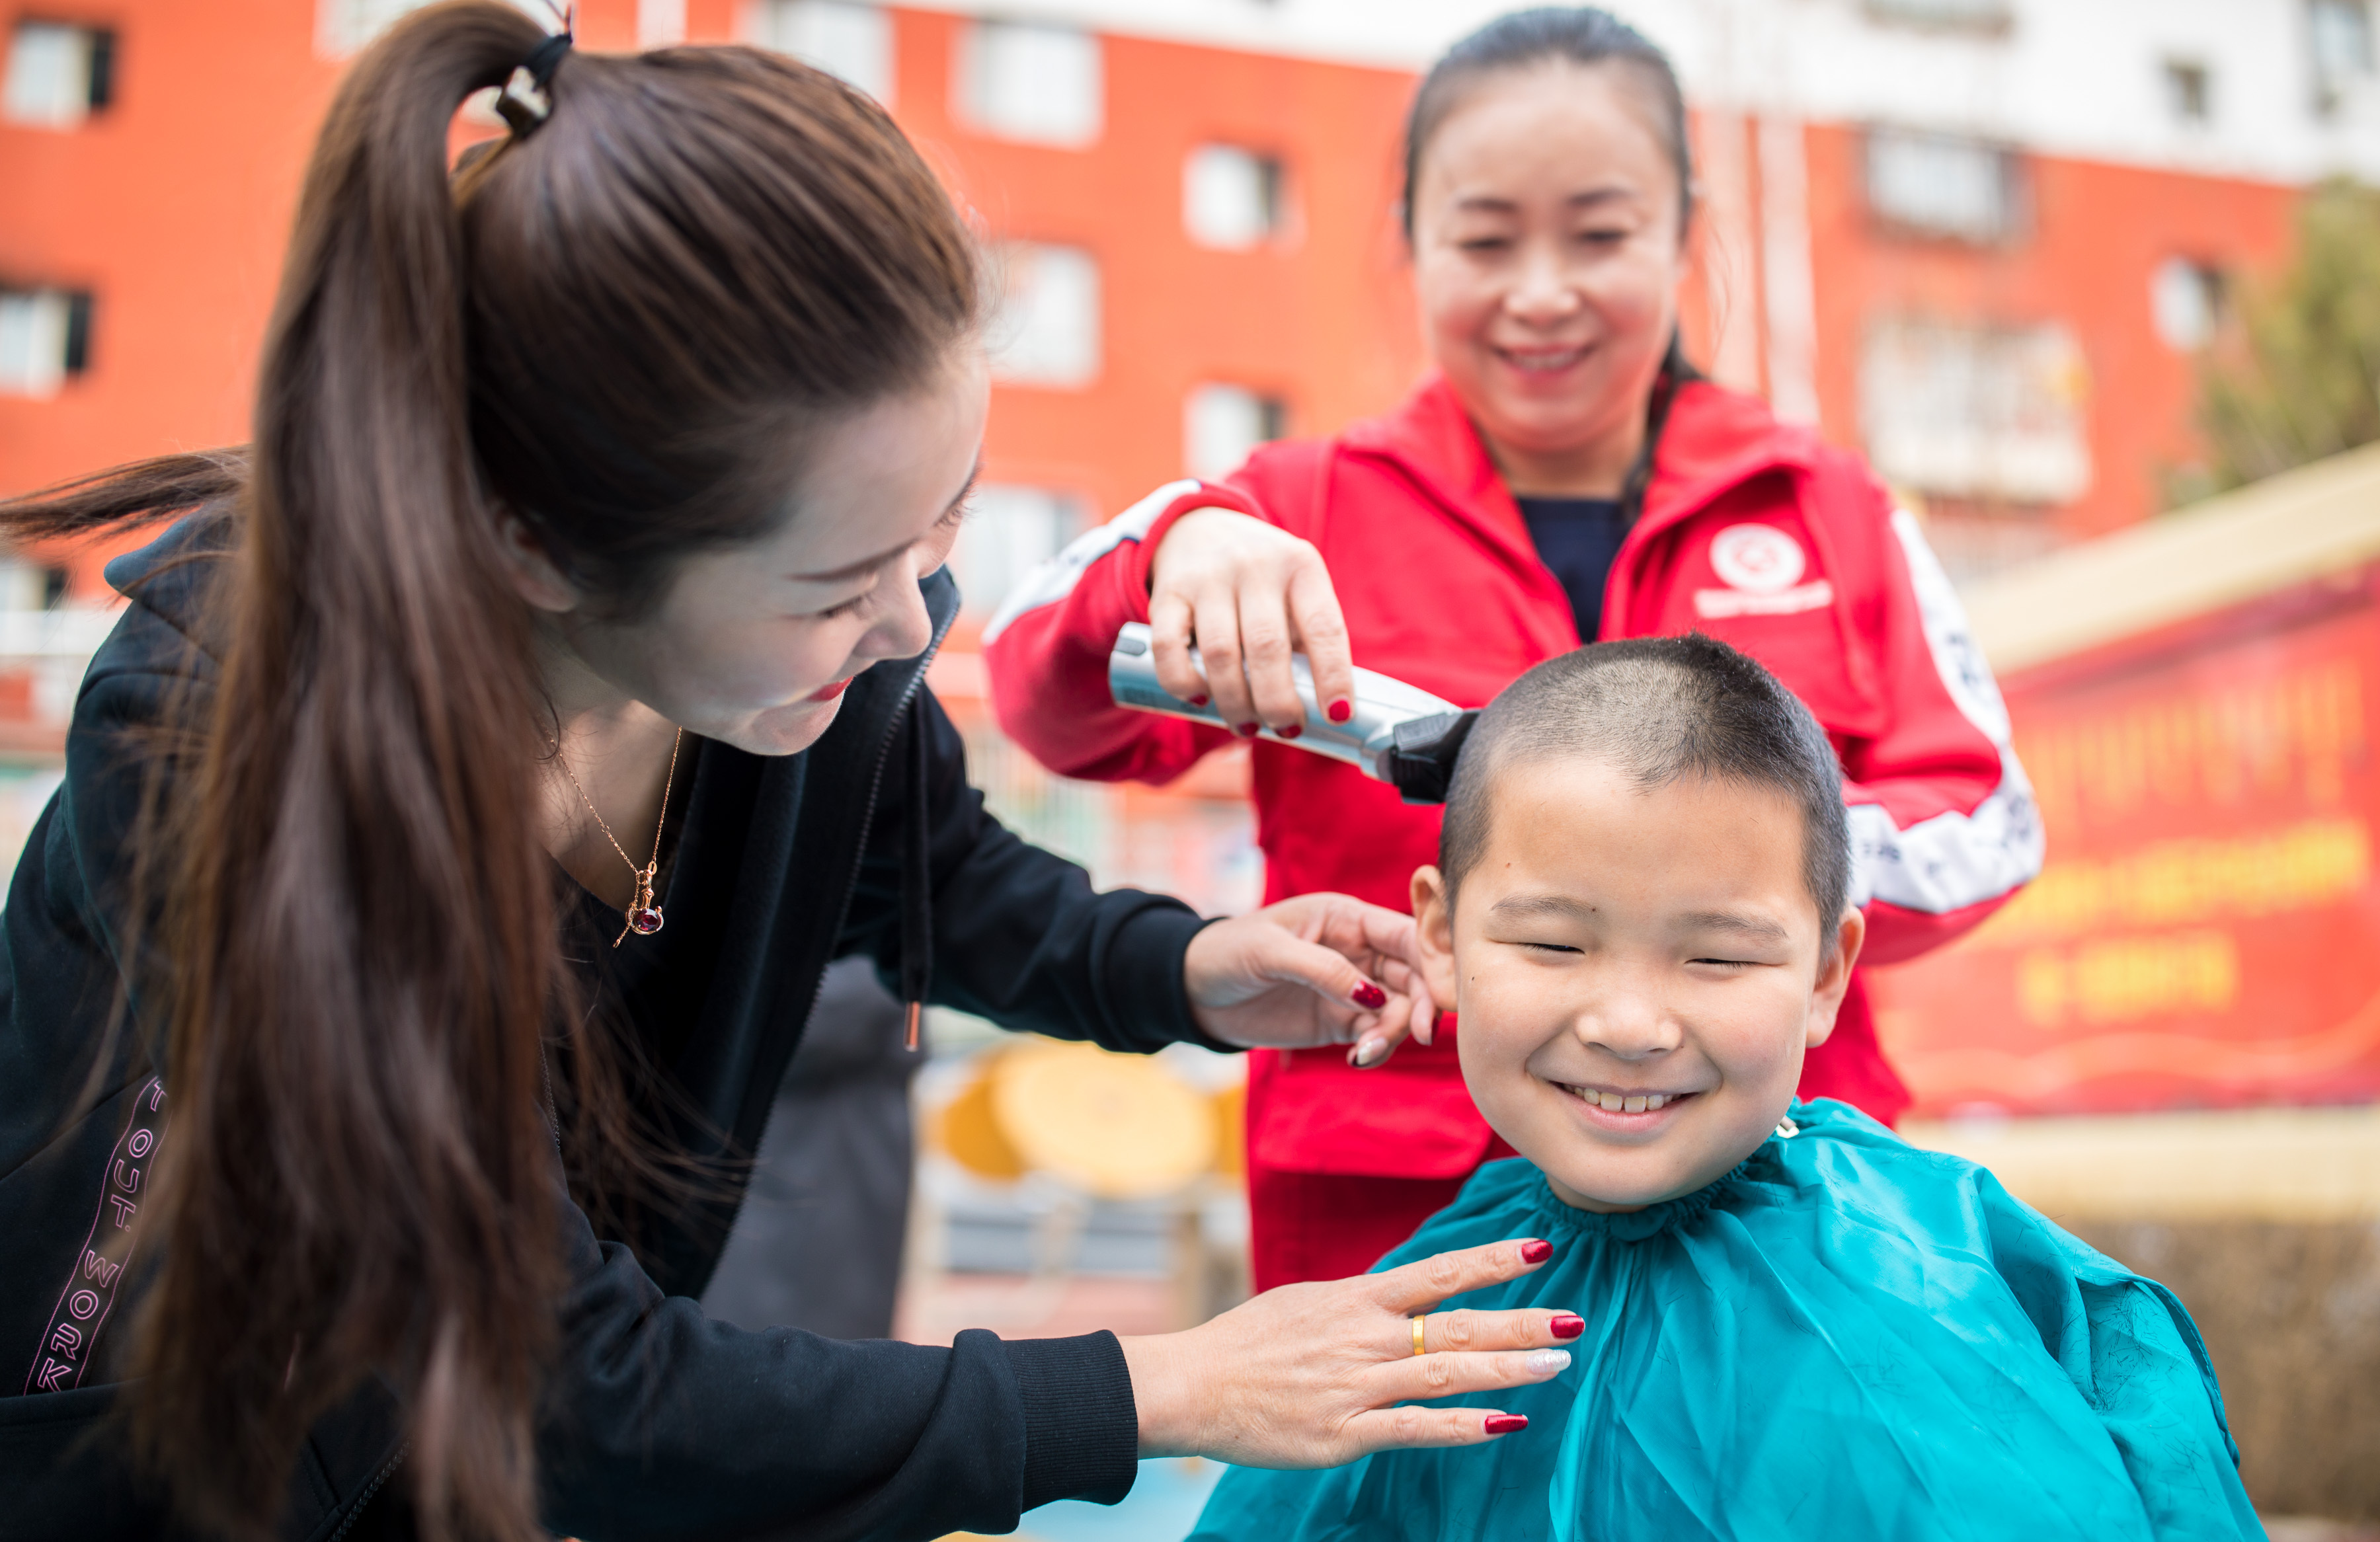 3月14日,内蒙古呼和浩特市玉泉区清泉街社区的志愿者在为小朋友理发